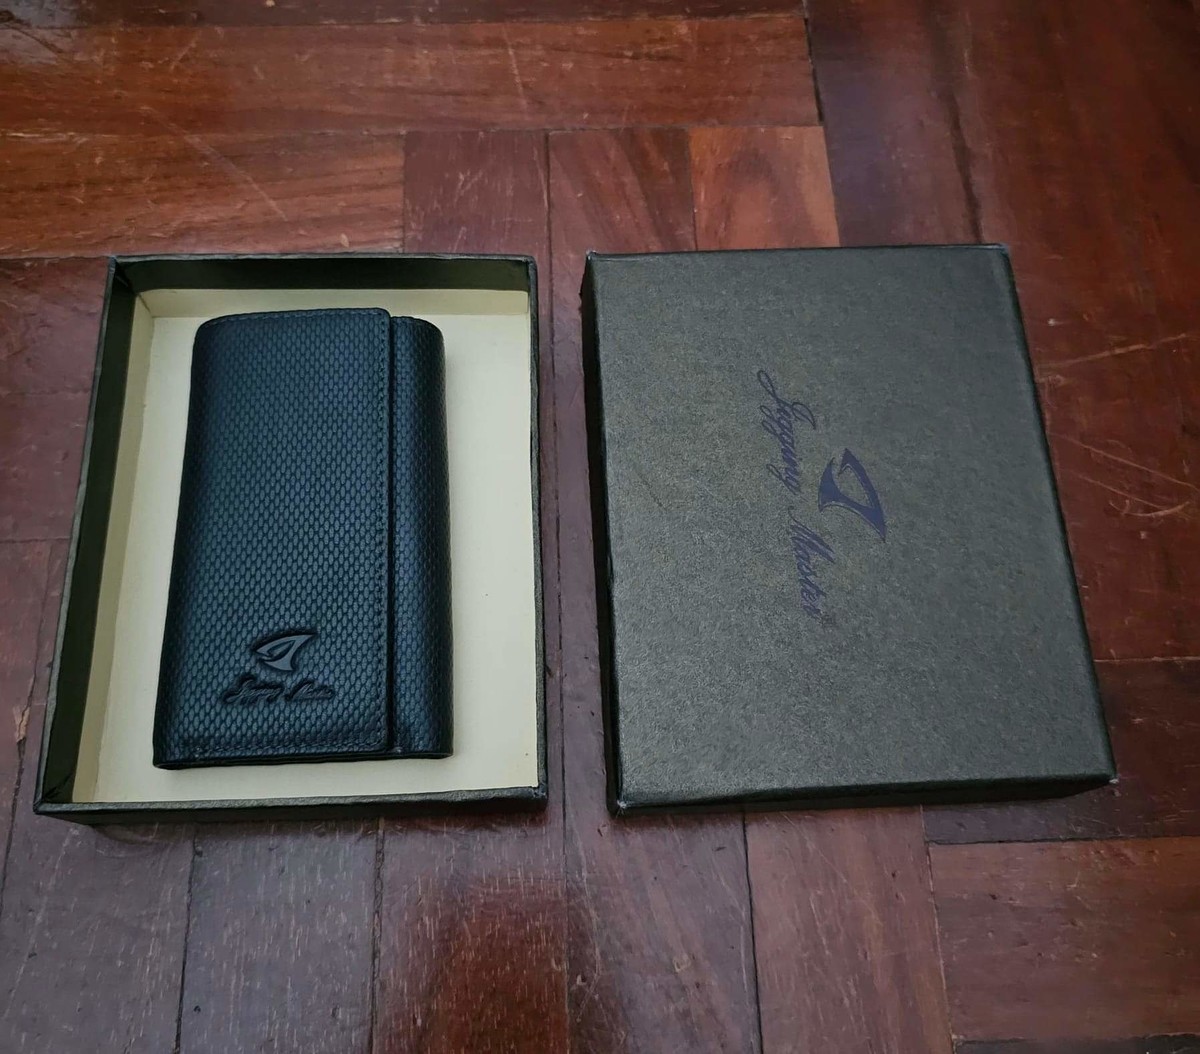 ( Rare​ item​ )​ Vายกระเป๋าใส่กุญแจ​ Jigging​ Master​ สภาพของใหม่​ 100% กล่องครบ